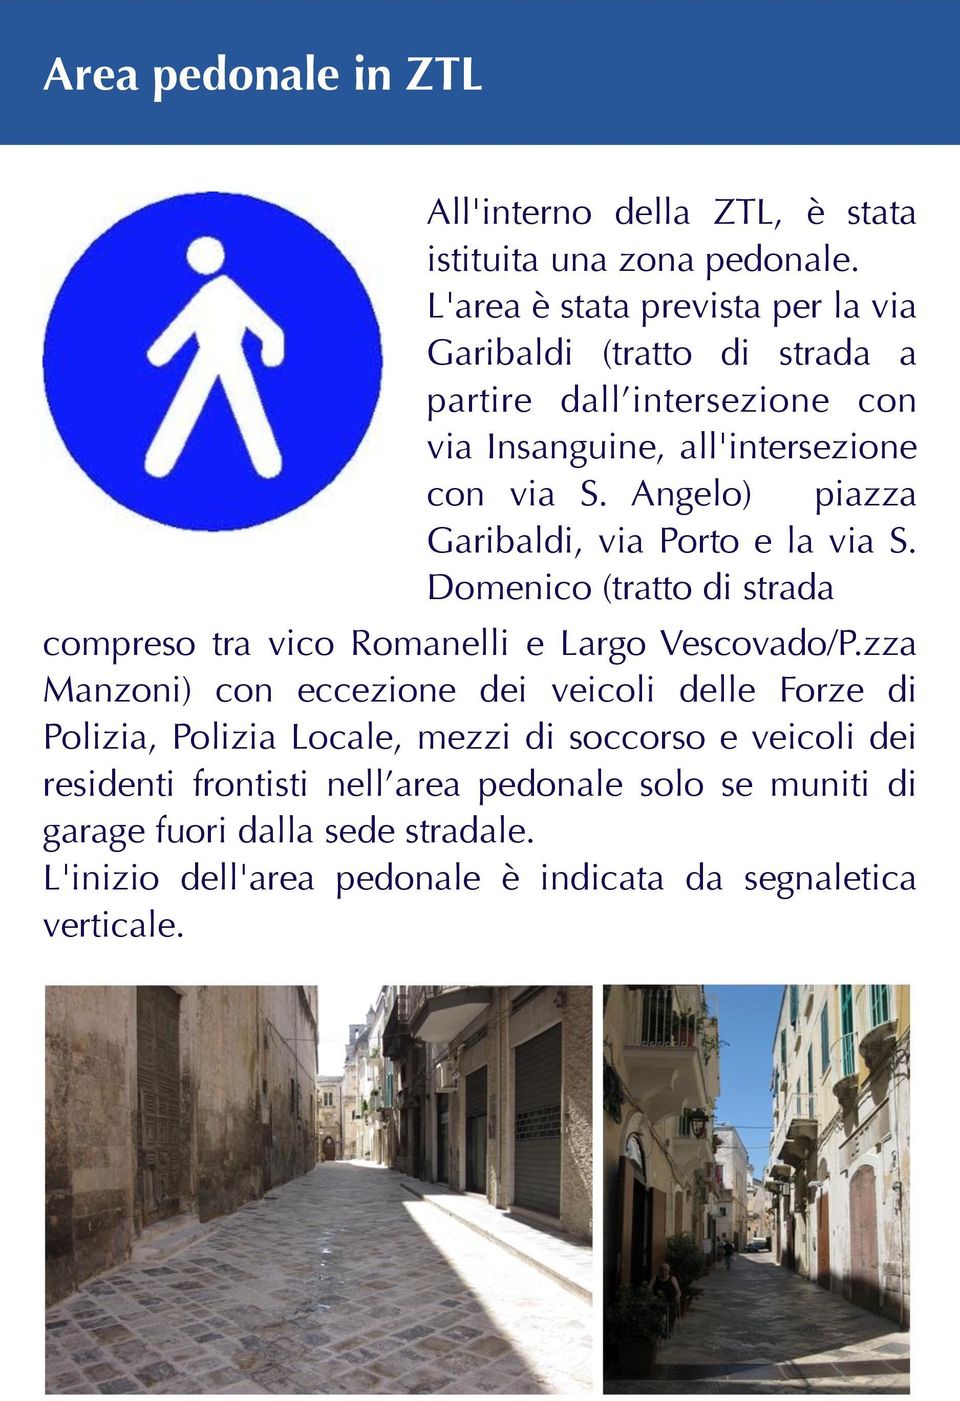 Angelo) piazza Garibaldi, via Porto e la via S. Domenico (tratto di strada compreso tra vico Romanelli e Largo Vescovado/P.